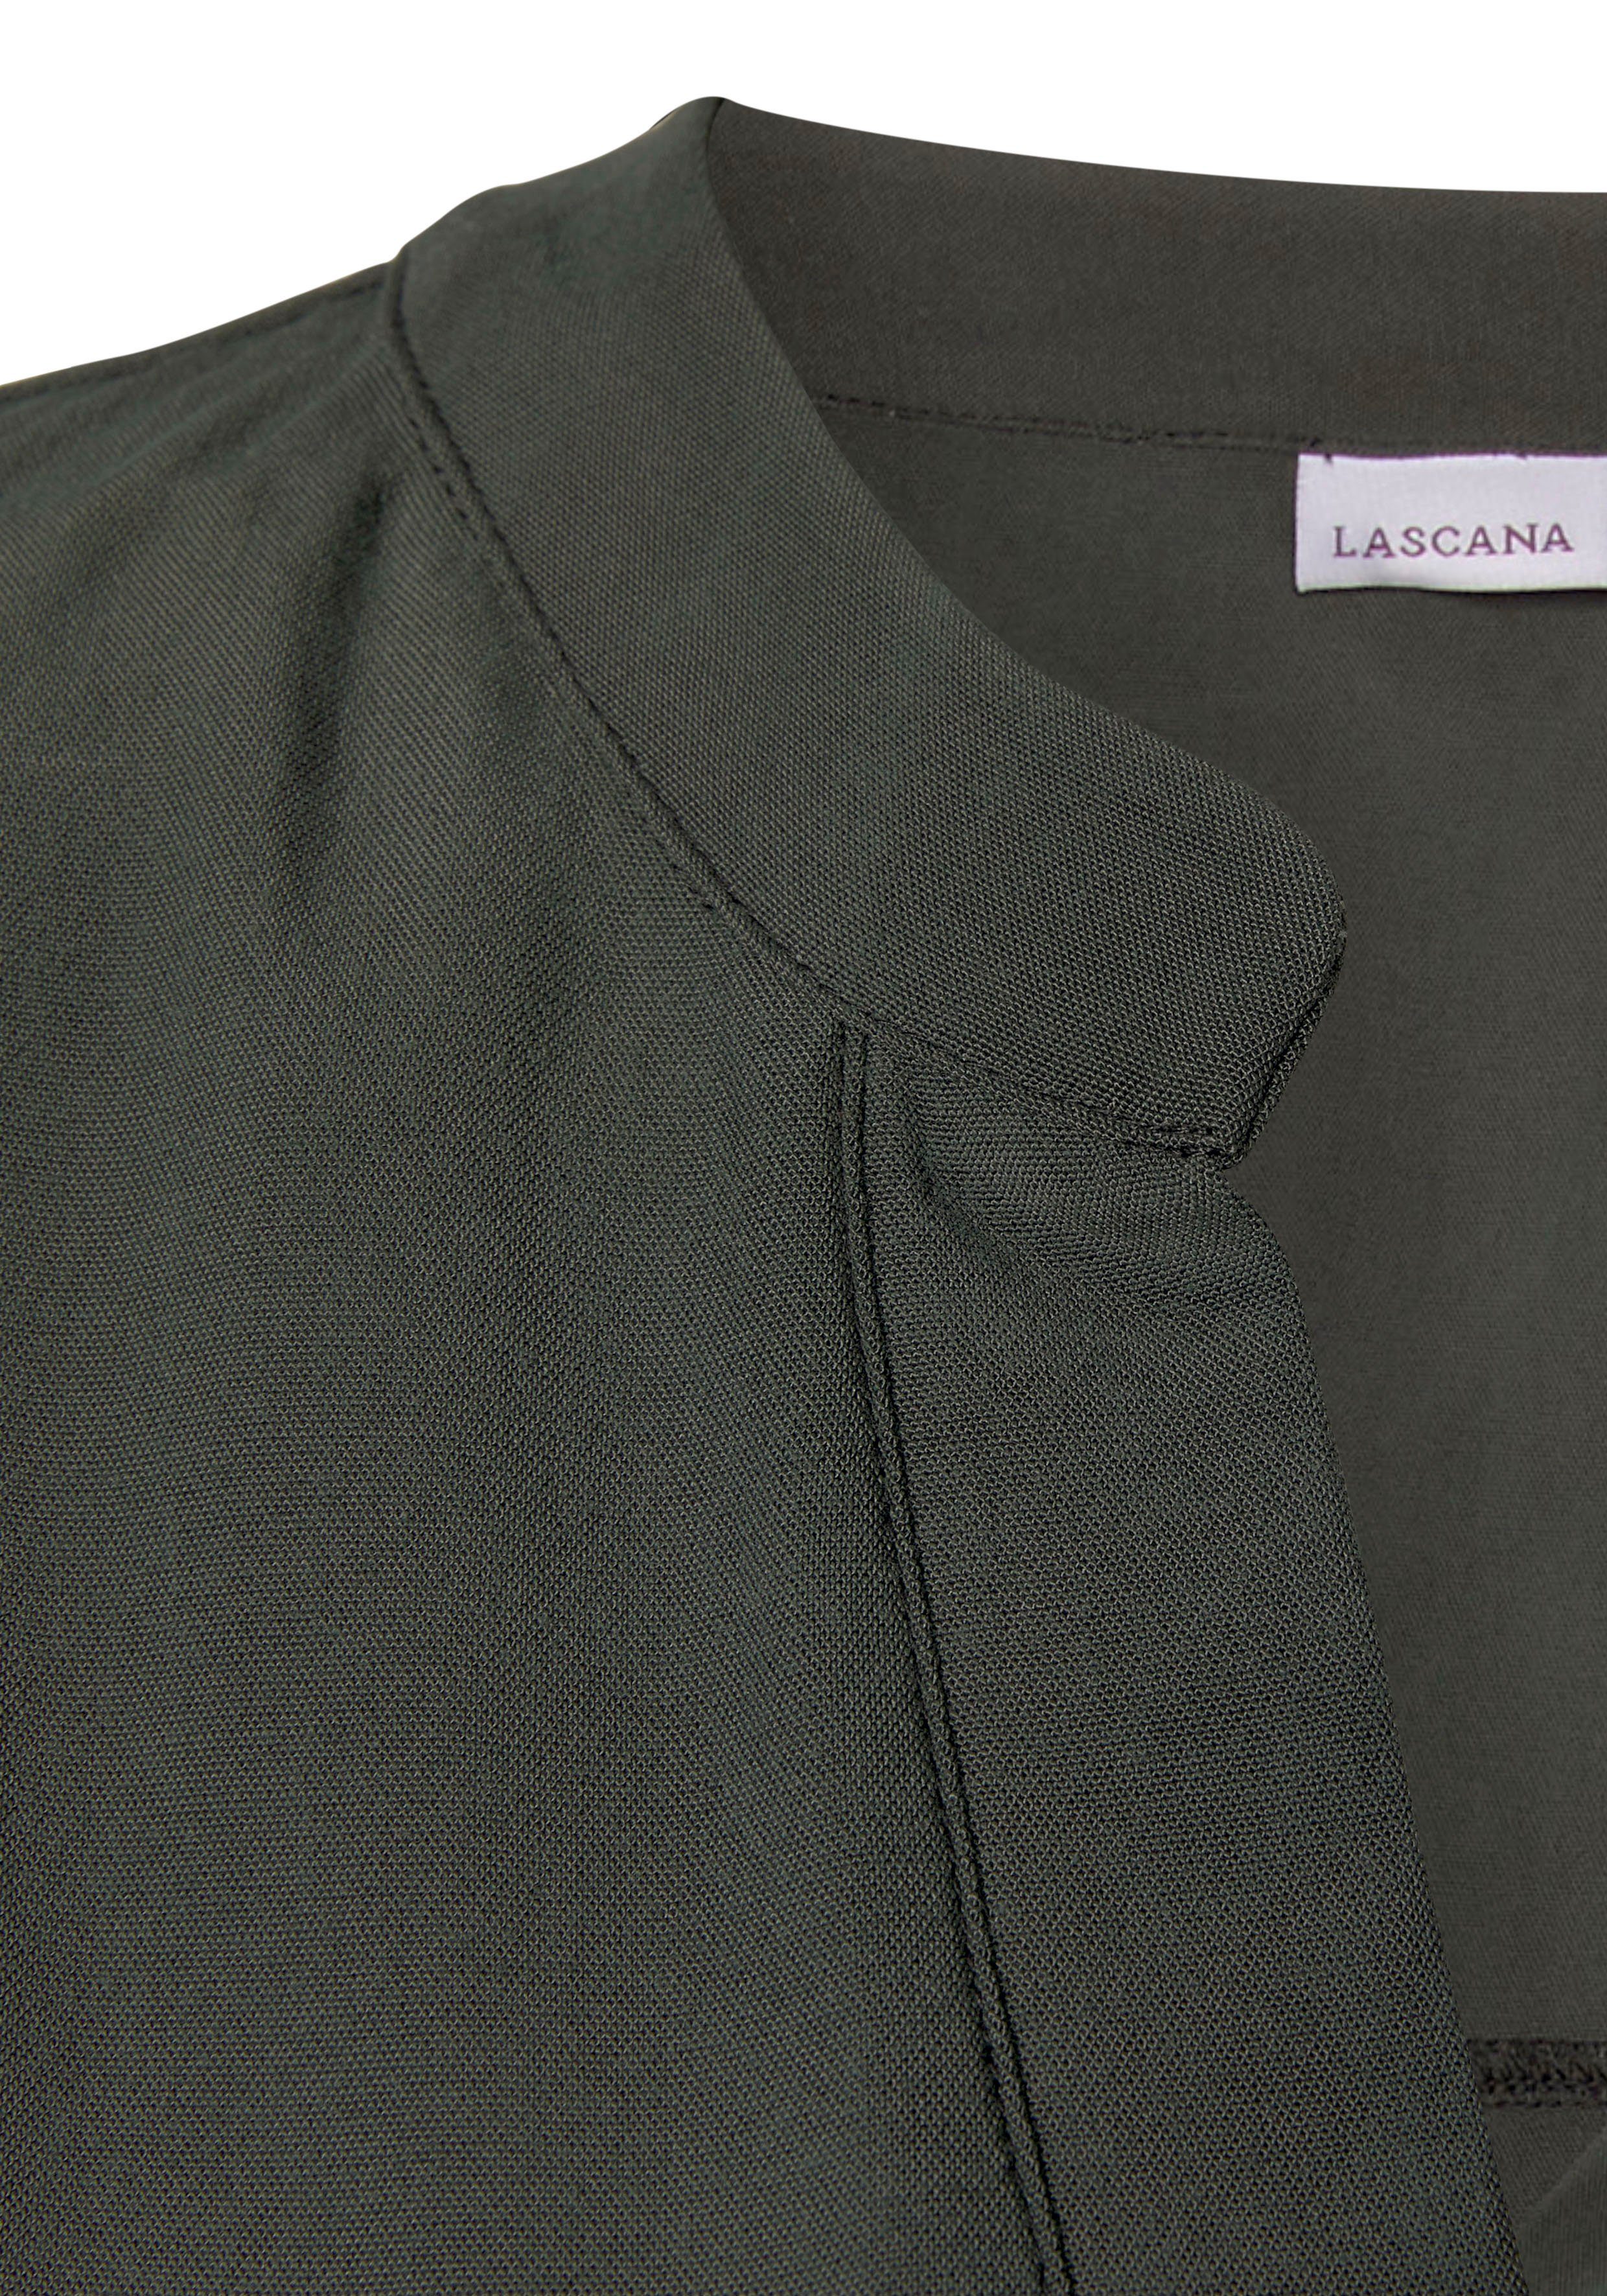 LASCANA Blusentop Basic mit Damenbluse, khaki Blusenshirt, V-Ausschnitt